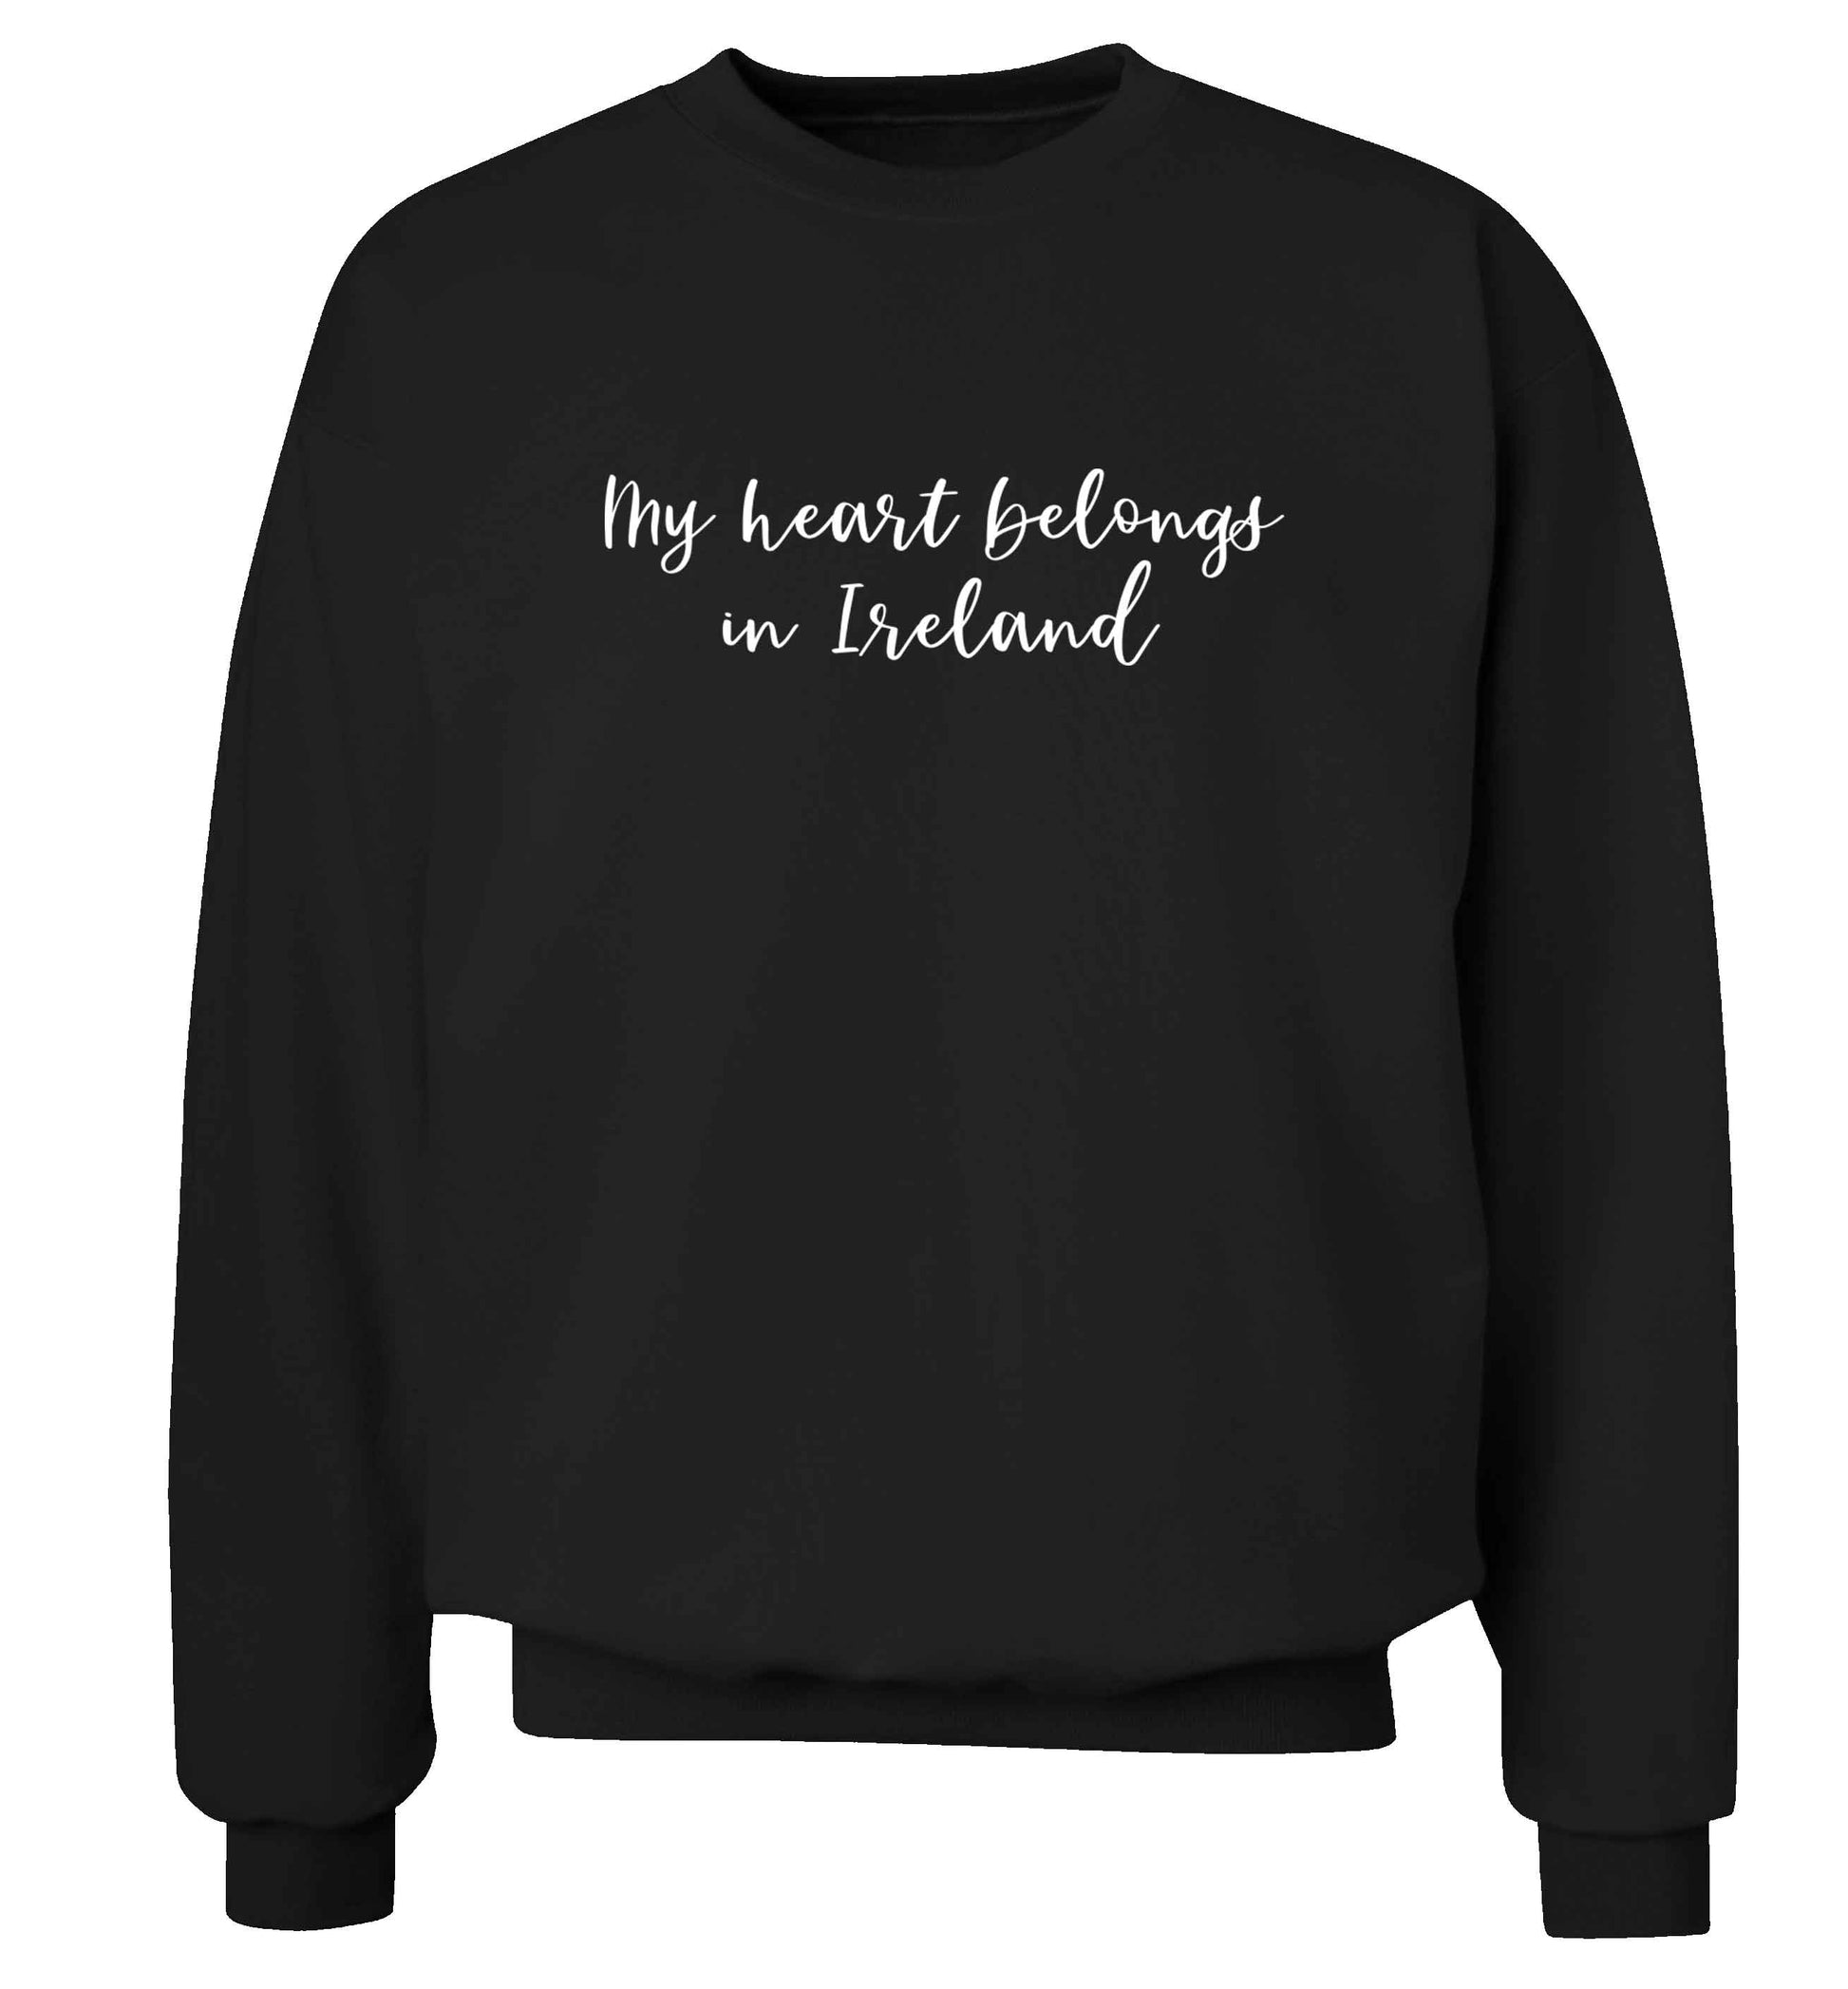 My heart belongs in Ireland adult's unisex black sweater 2XL